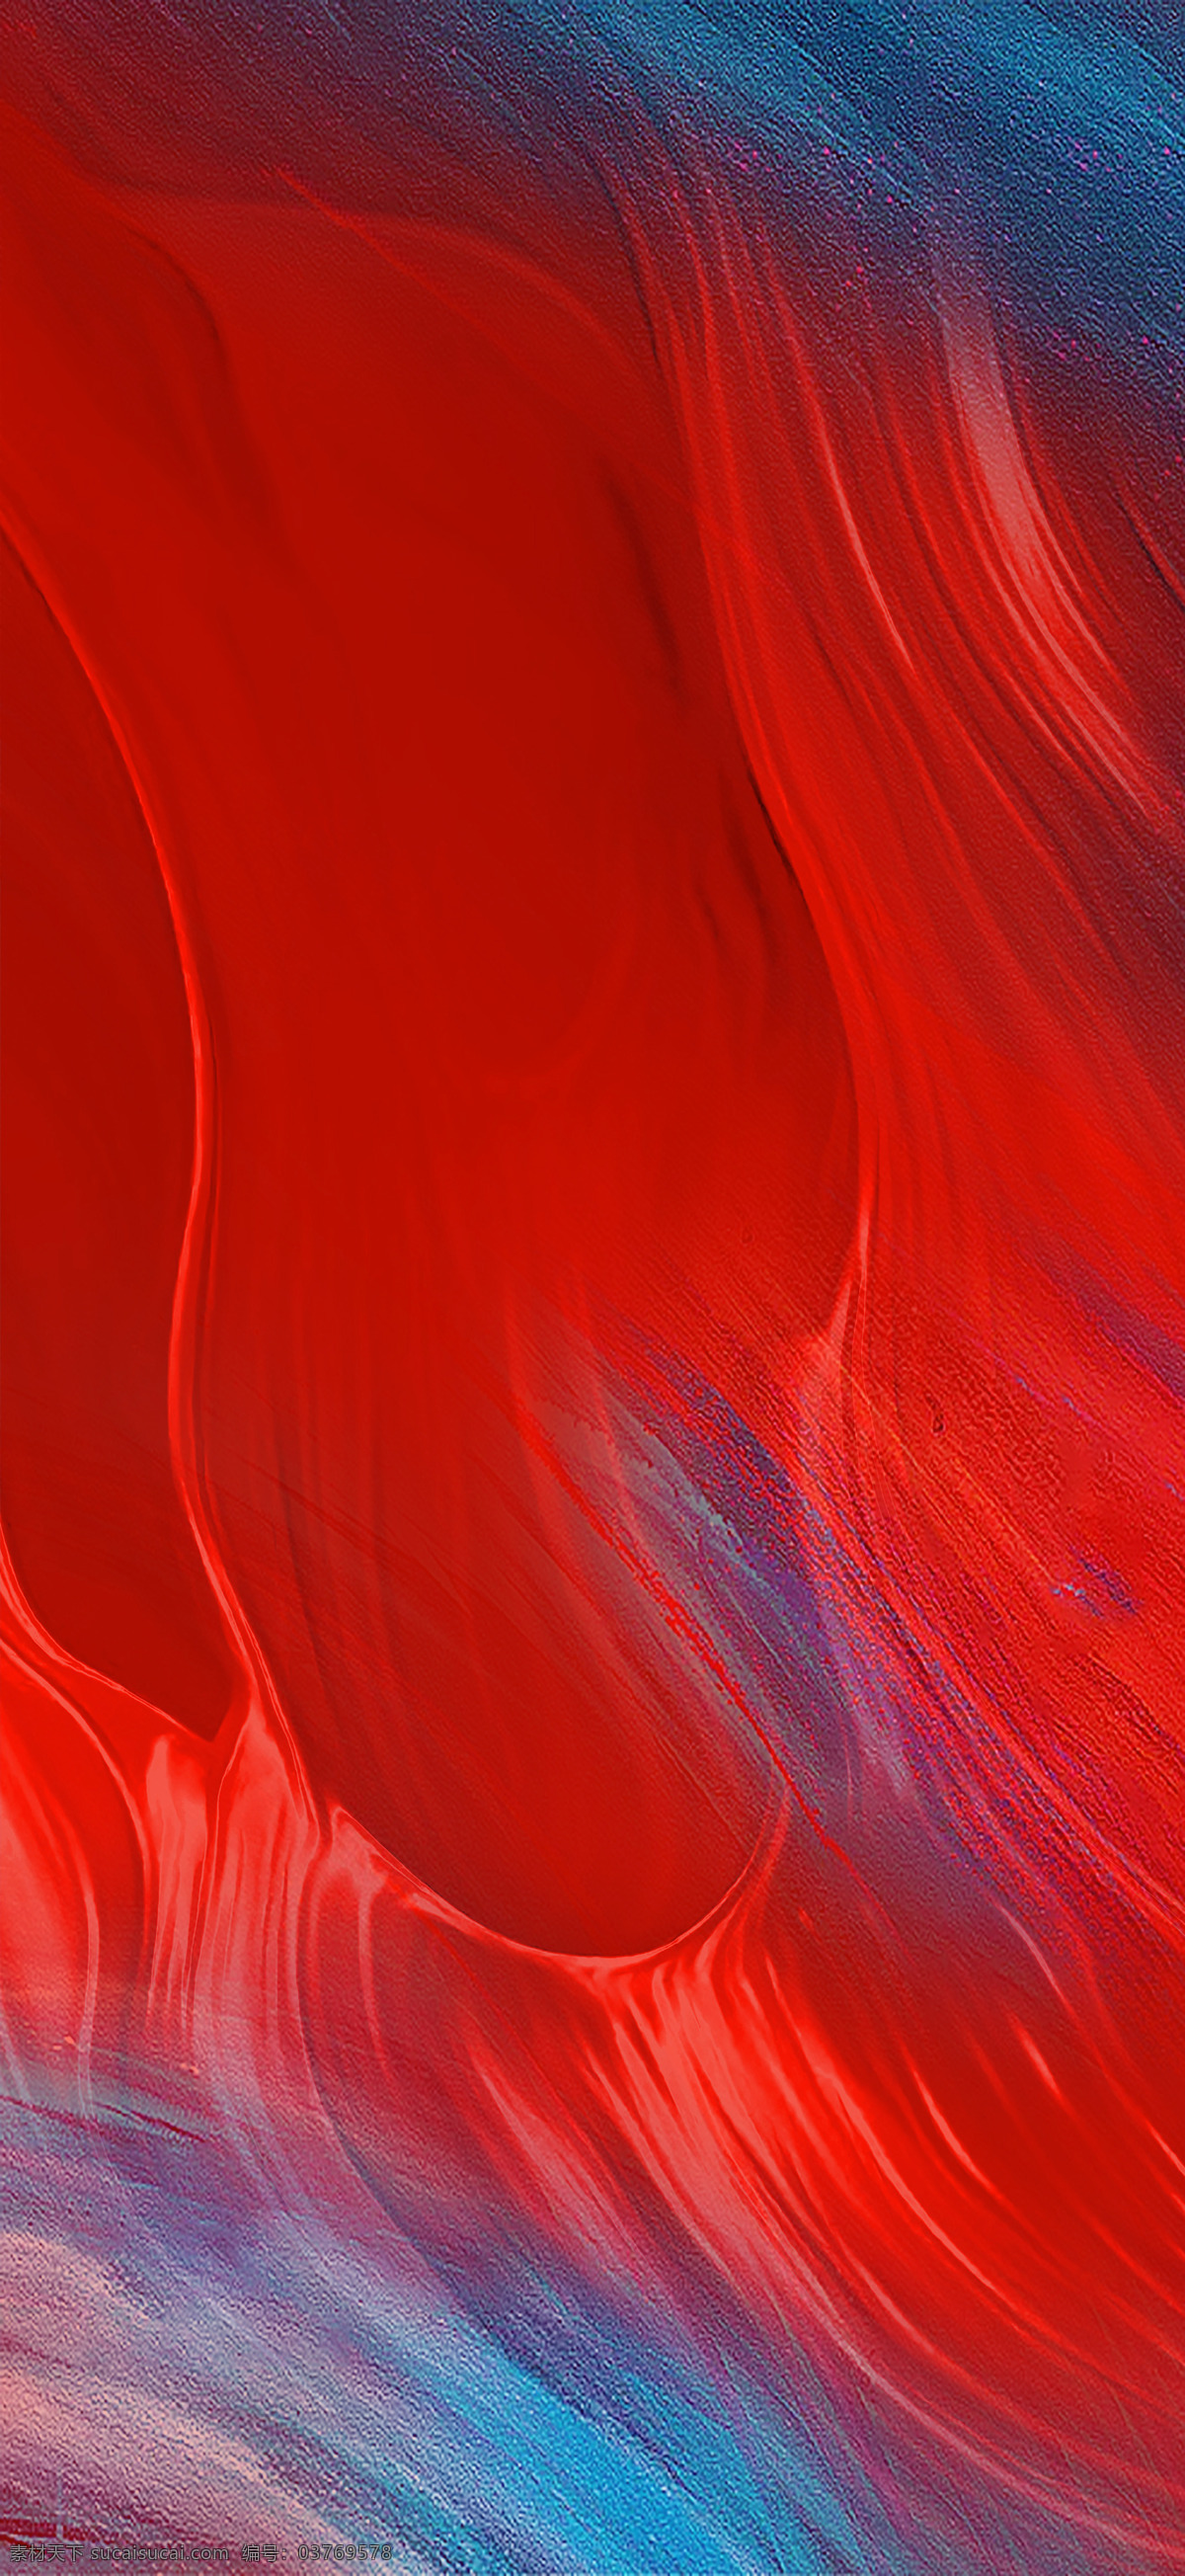 红蓝 抽象 水墨 肌理 地产 背景图片 蓝色 图案 炫酷 大气 简约 红色 背景 高级 质感 微信 底纹边框 抽象底纹